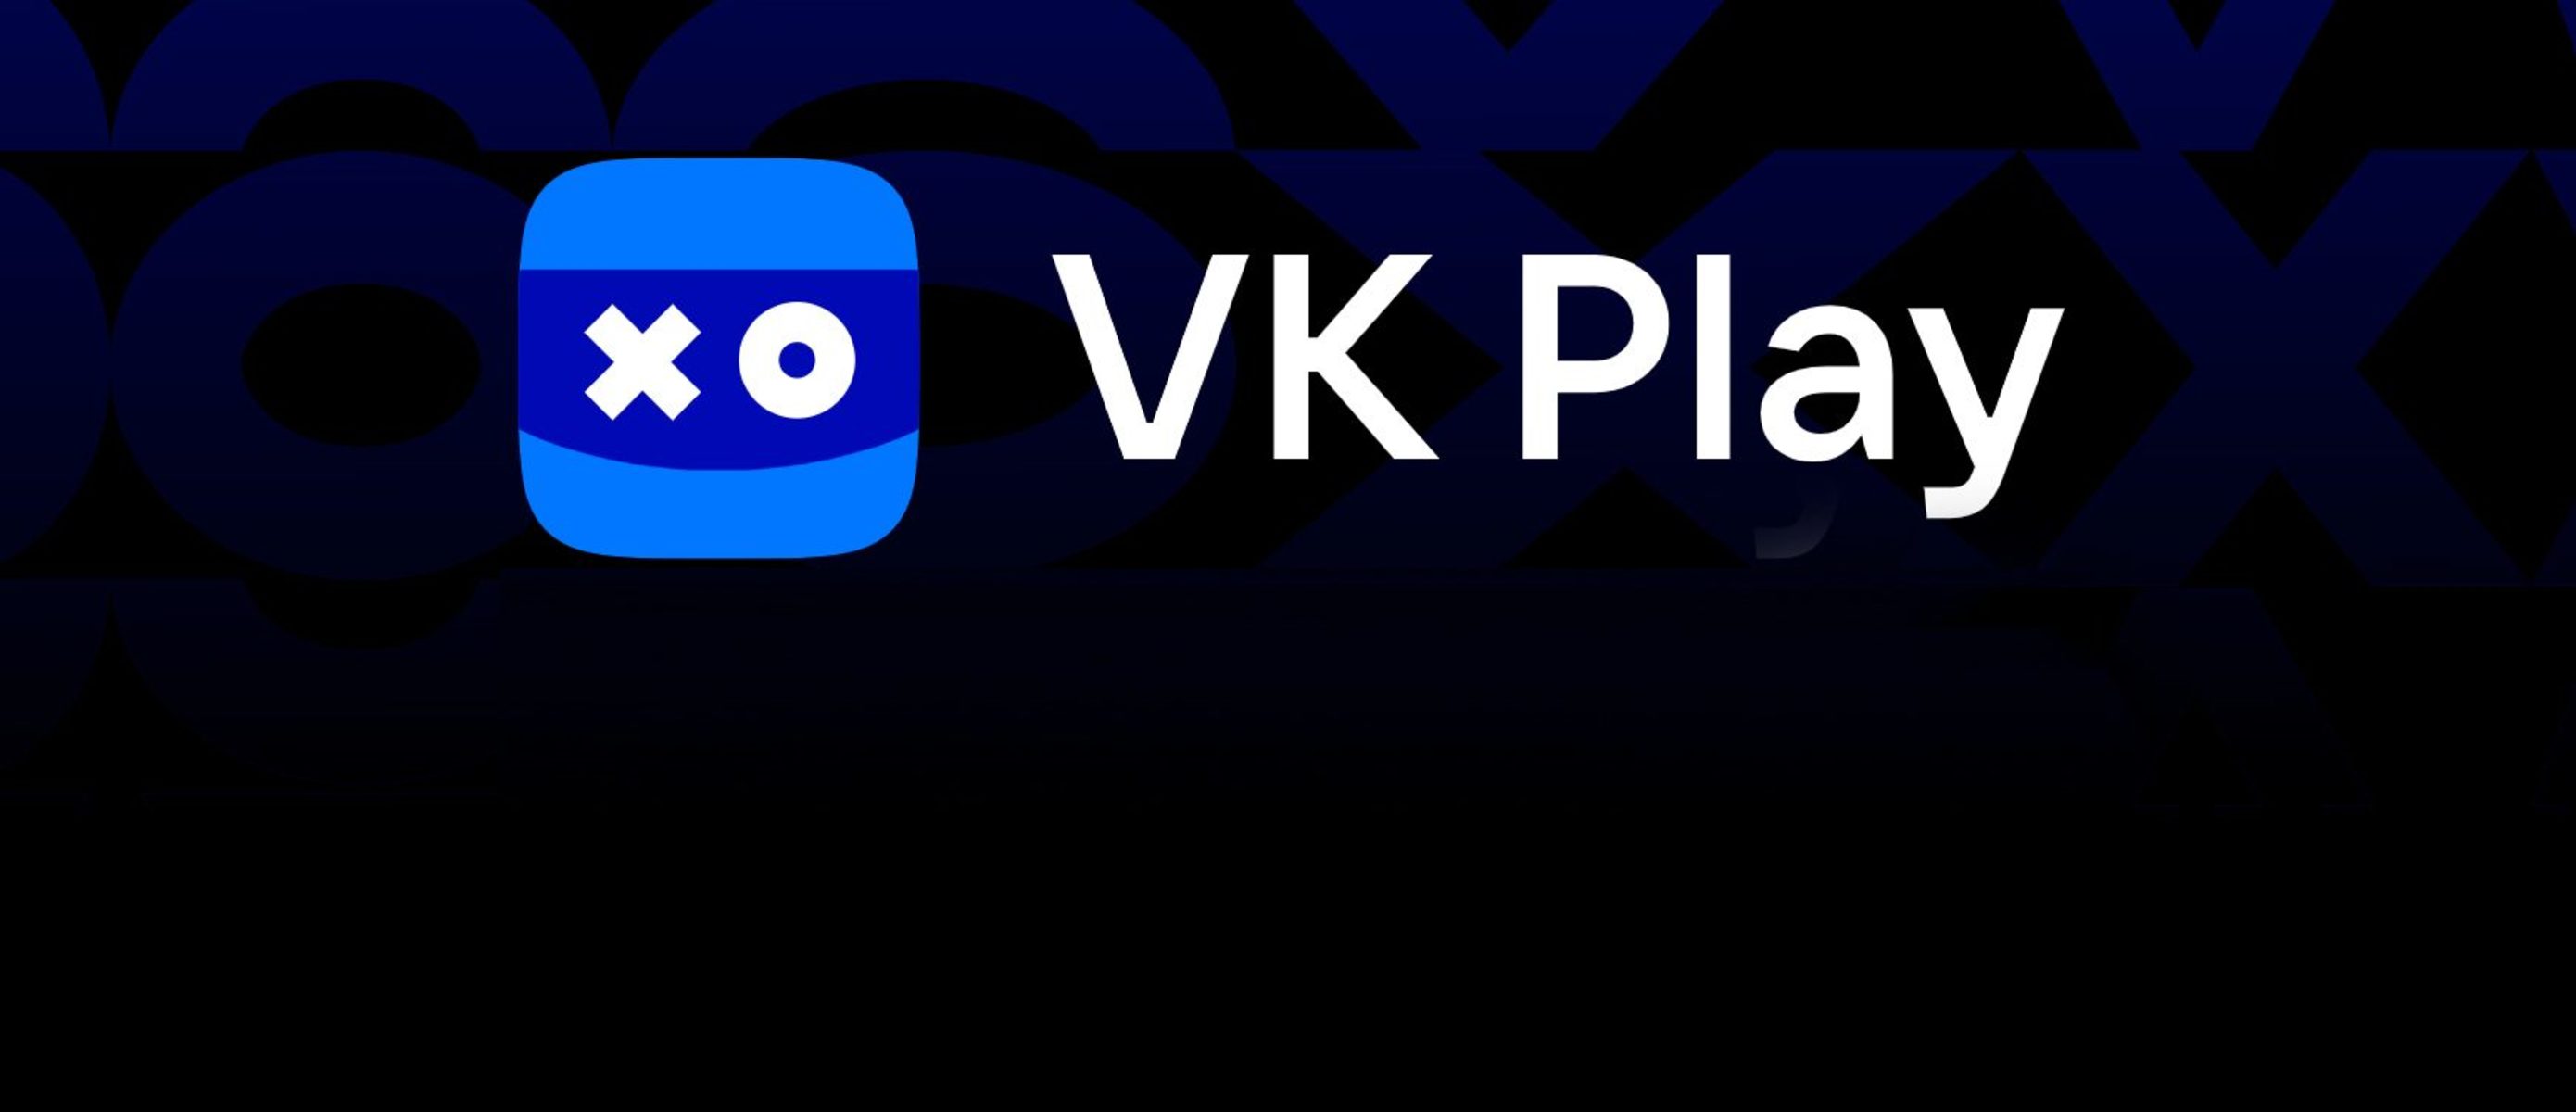 Постер для записи в блоге - Как активировать ключ в VK Play?